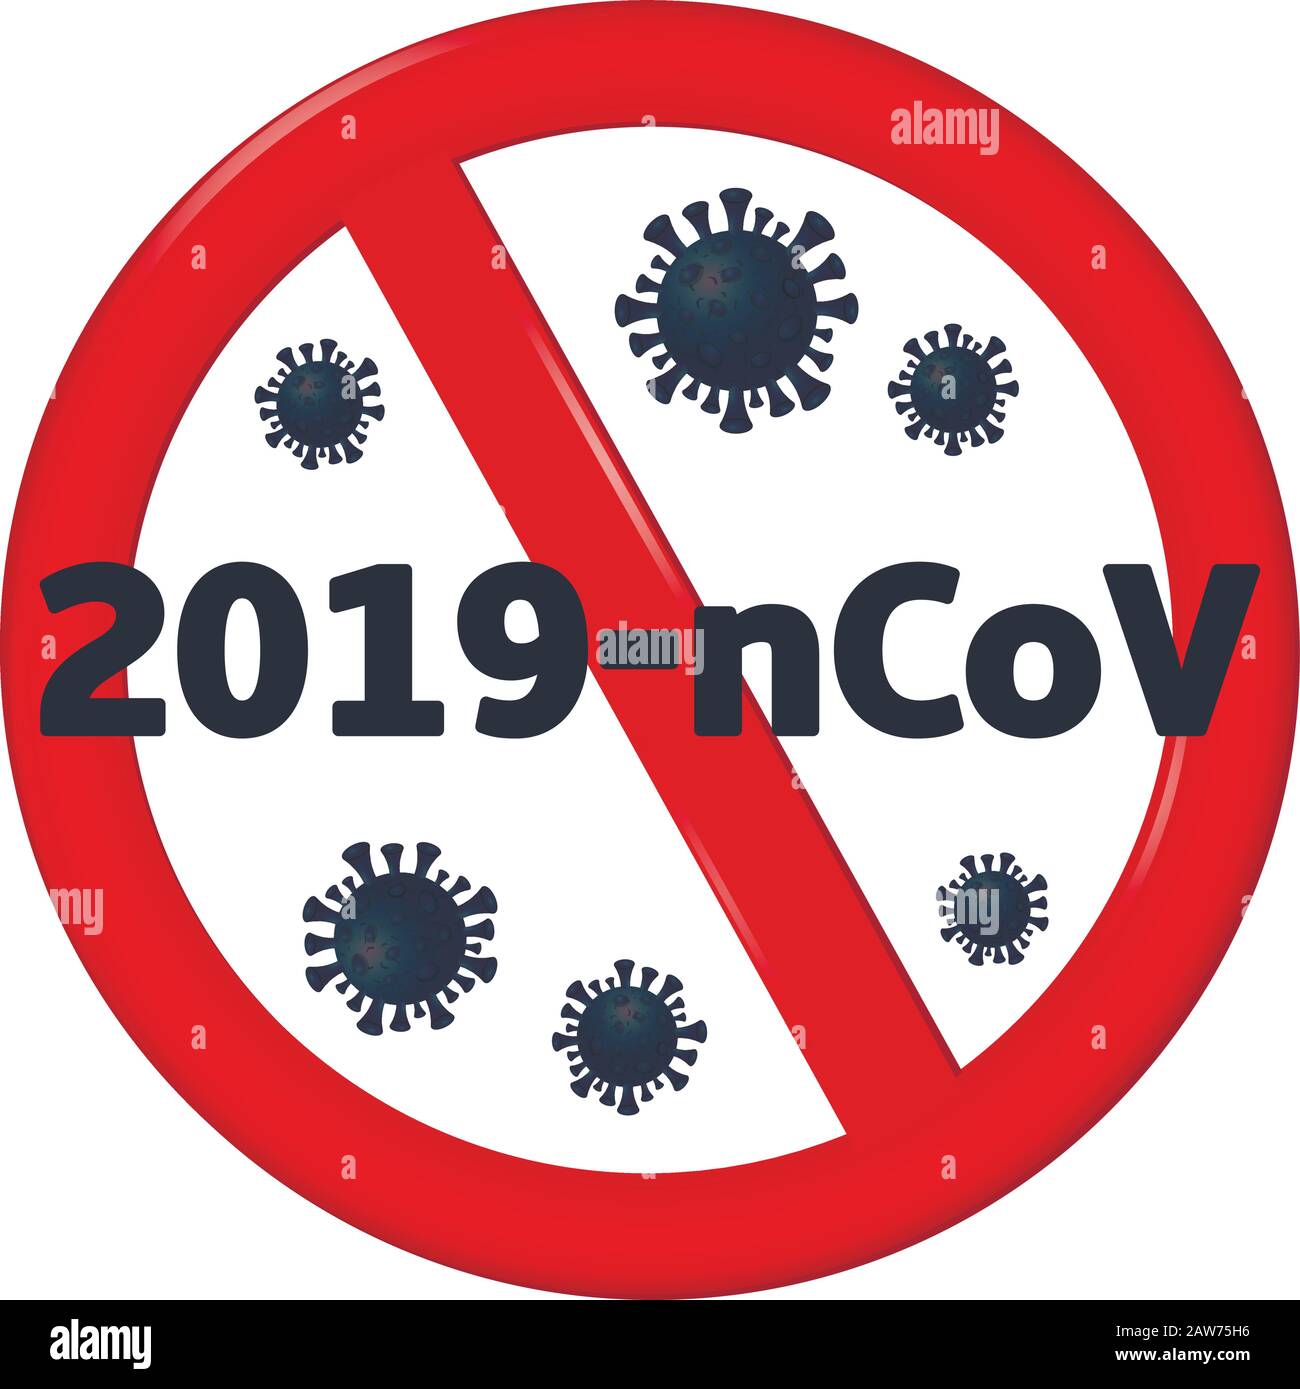 Arrestare il coronavirus. Il coronavirus 2019-nCoV è attraversato da un segnale DI STOP rosso Illustrazione Vettoriale